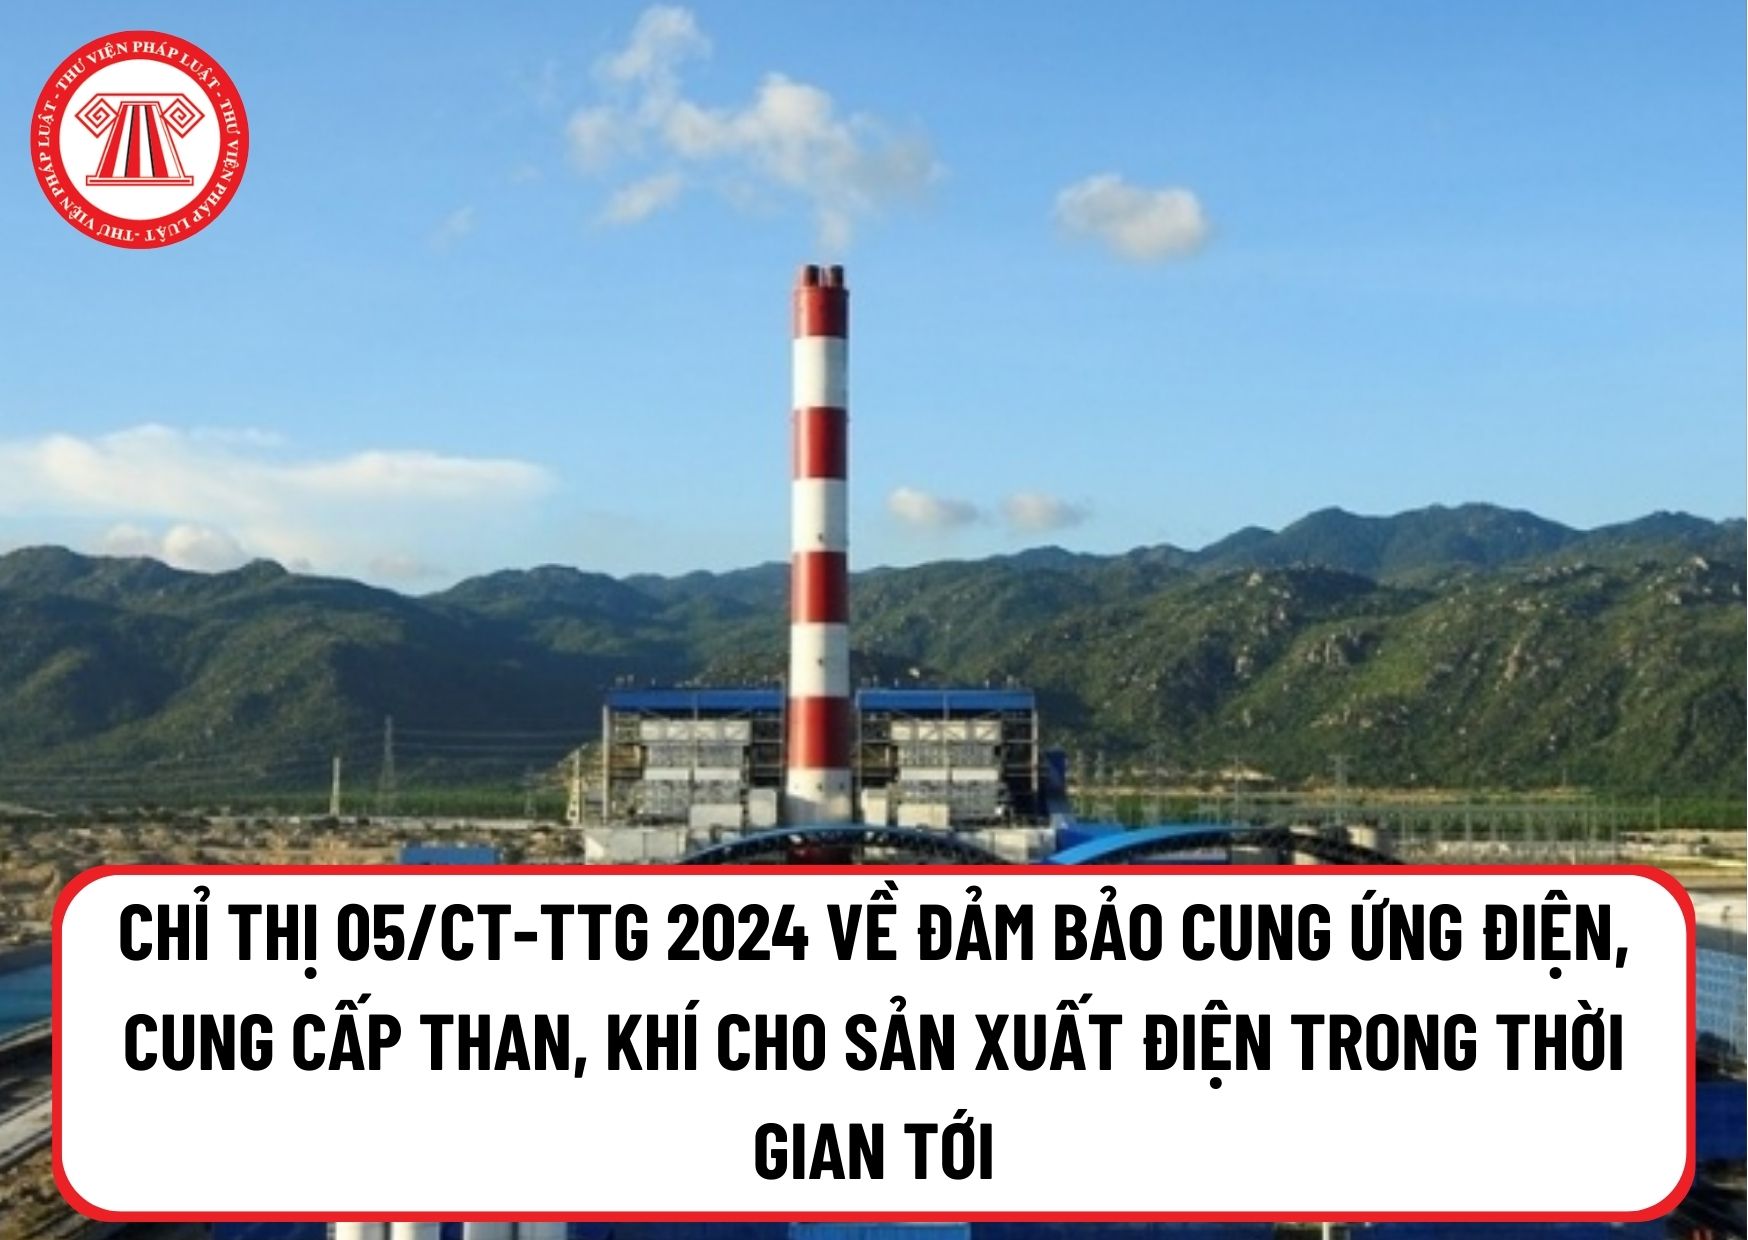 Thủ tướng Chính phủ chỉ thị Tập đoàn Điện lực và Tập đoàn Dầu khí Việt Nam đảm bảo sản xuất điện trong thời gian tới?